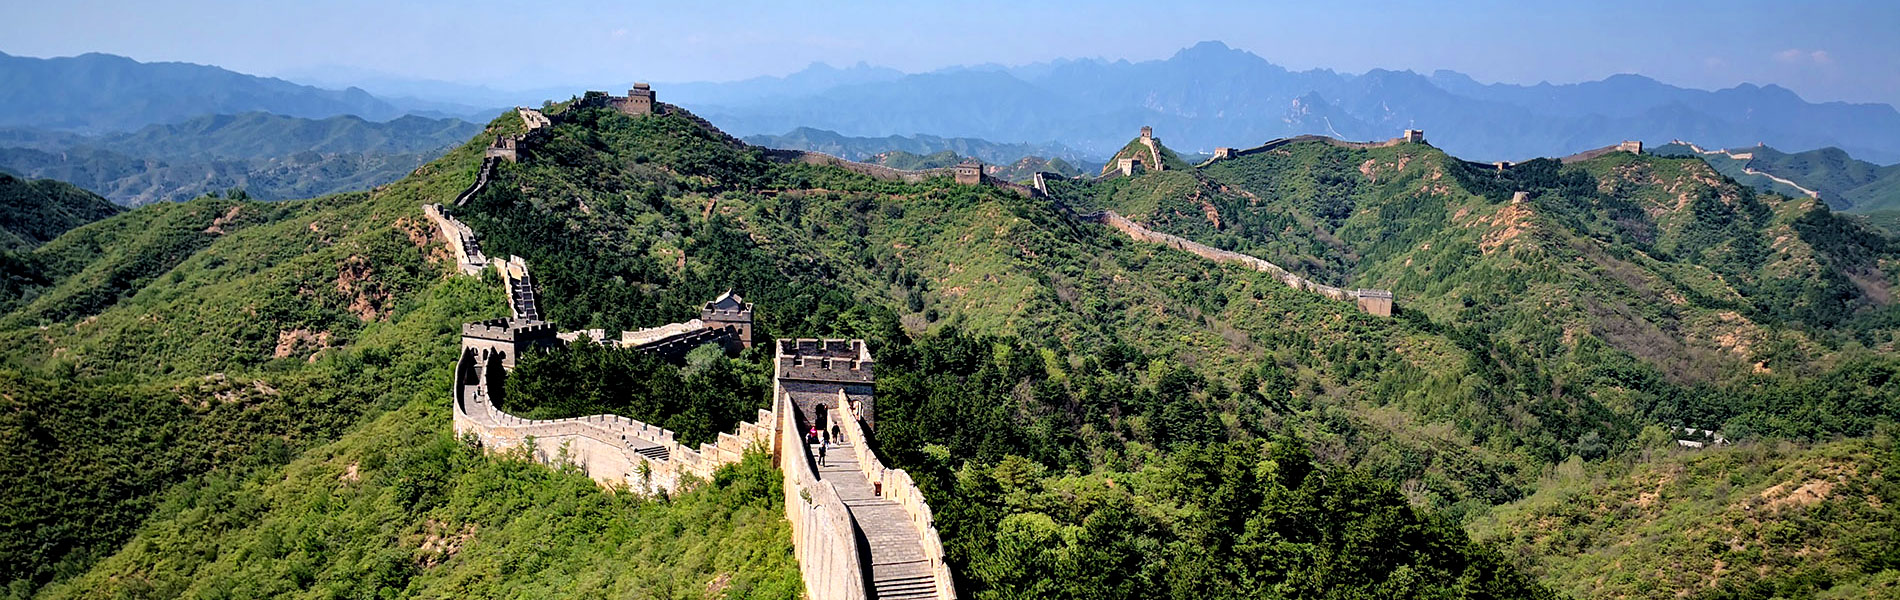 Great Wall Chang Cheng